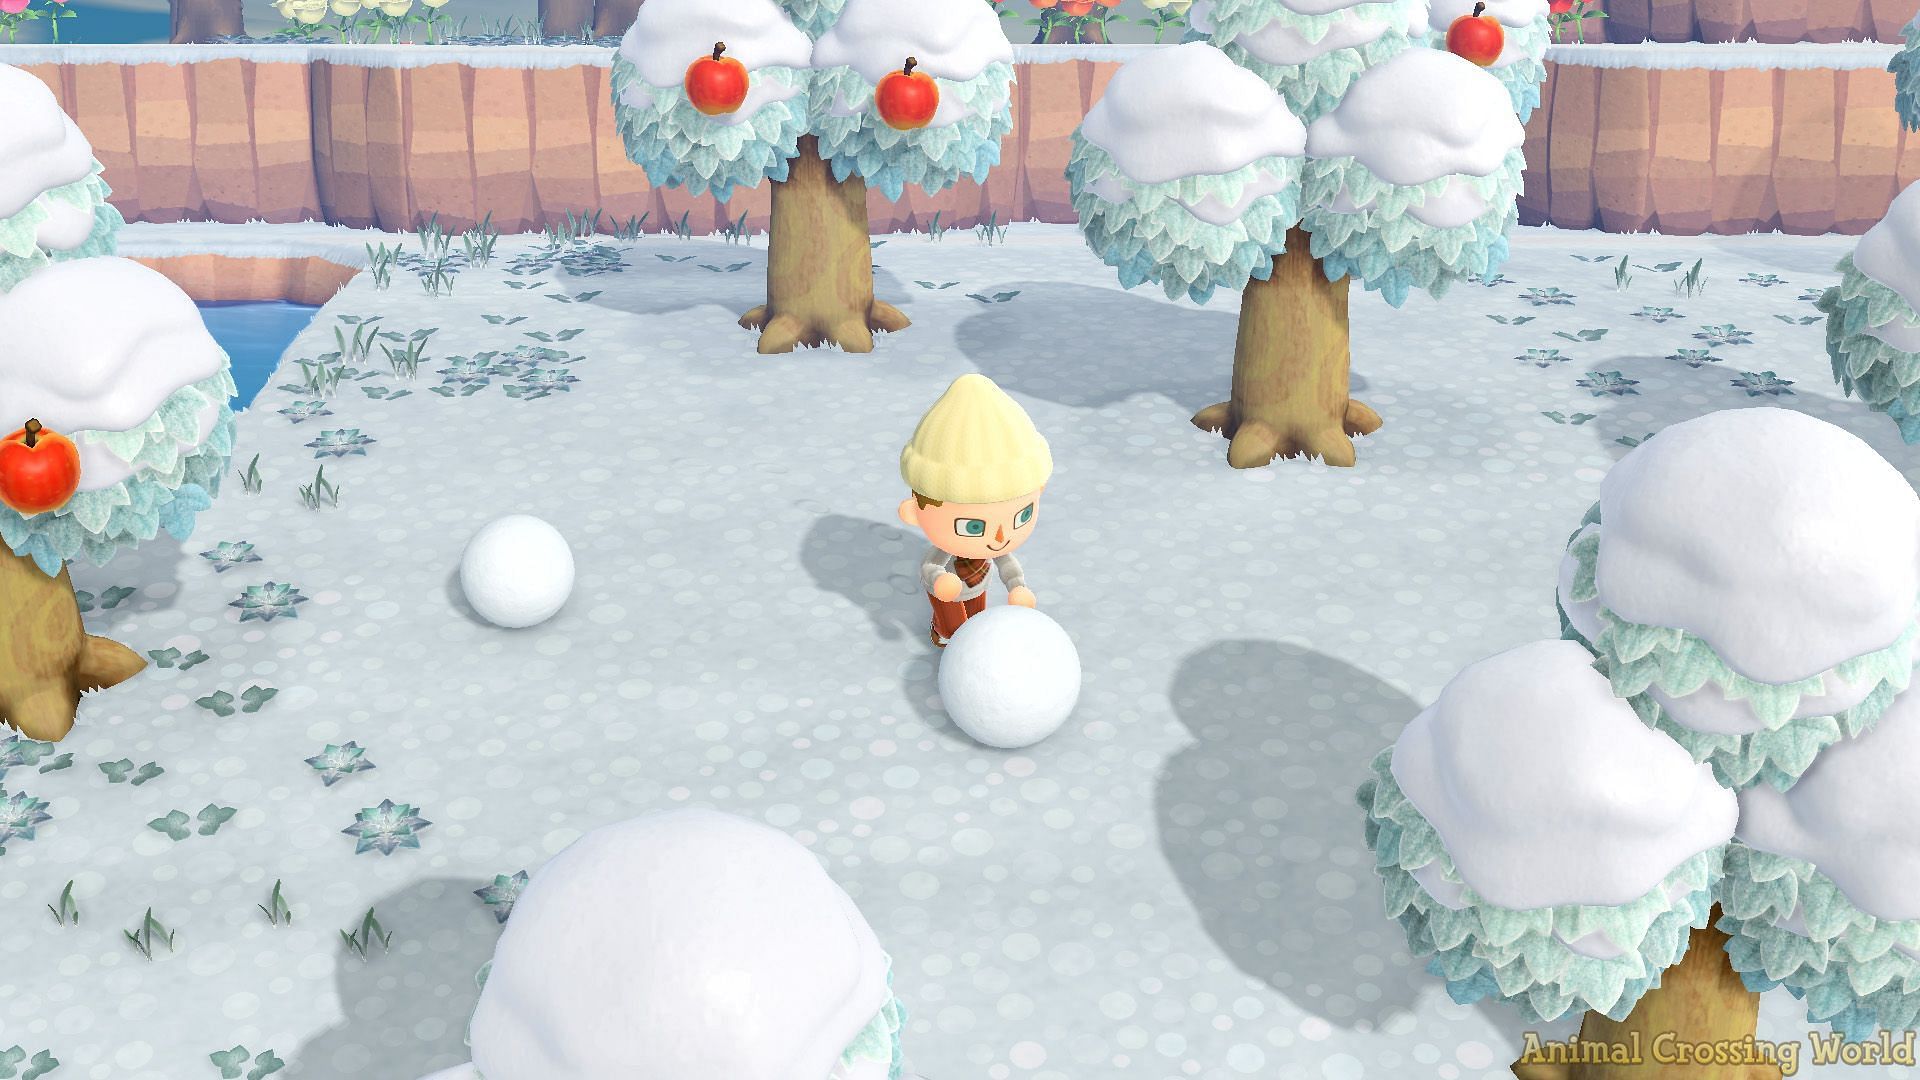 Снежок второй. Animal Crossing New Horizons зима. Снеговик в Анимал Кроссинг. Animal Crossing идеальный Снеговик. Снежок 1 снежок 2 снежок 3 симпсоны.